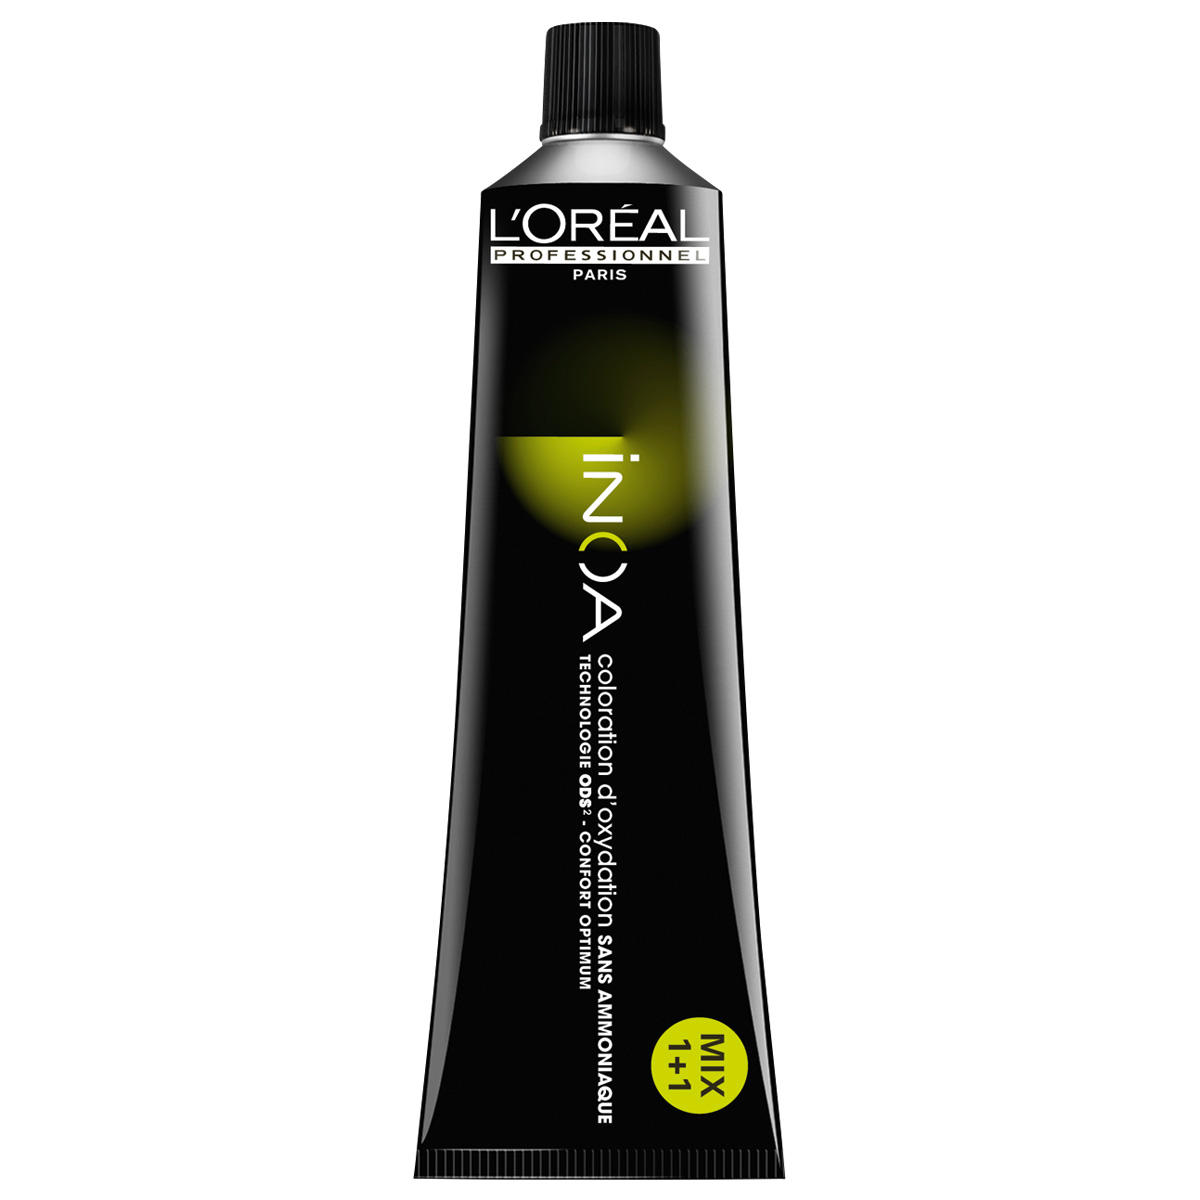 L'Oréal Professionnel Paris Coloration 7,44 Biondo medio rame profondo, tubo 60 ml - 1